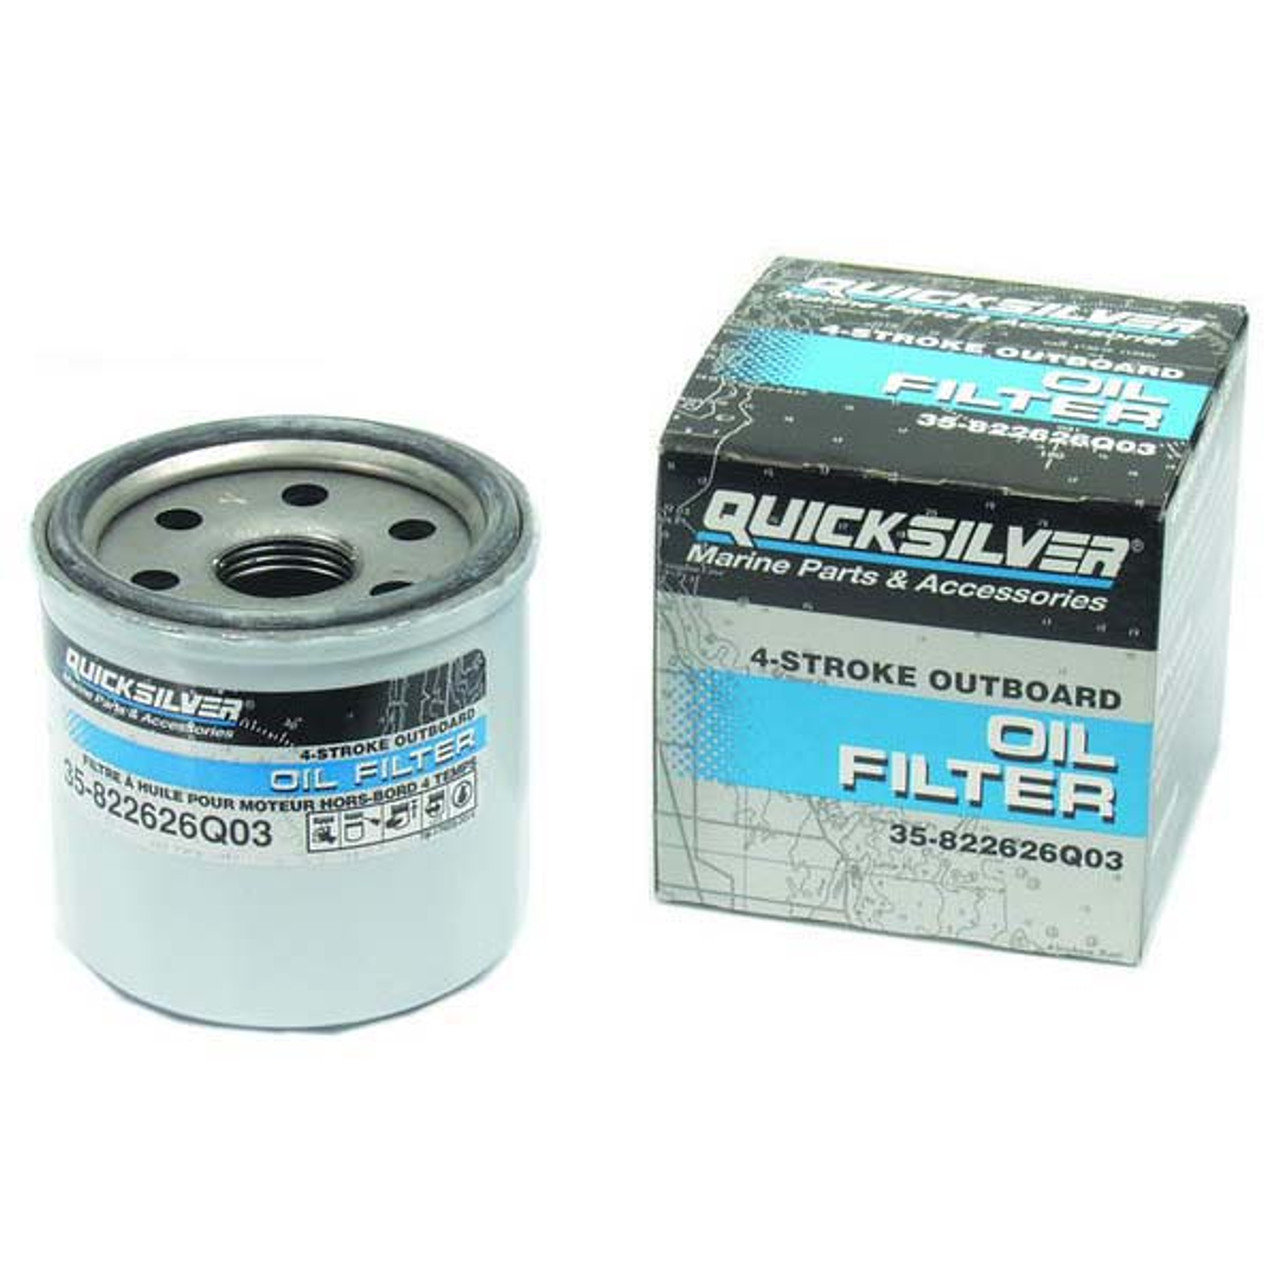 Quicksilver 35-8M0162832 4-Stroke Outboard Oil Filter